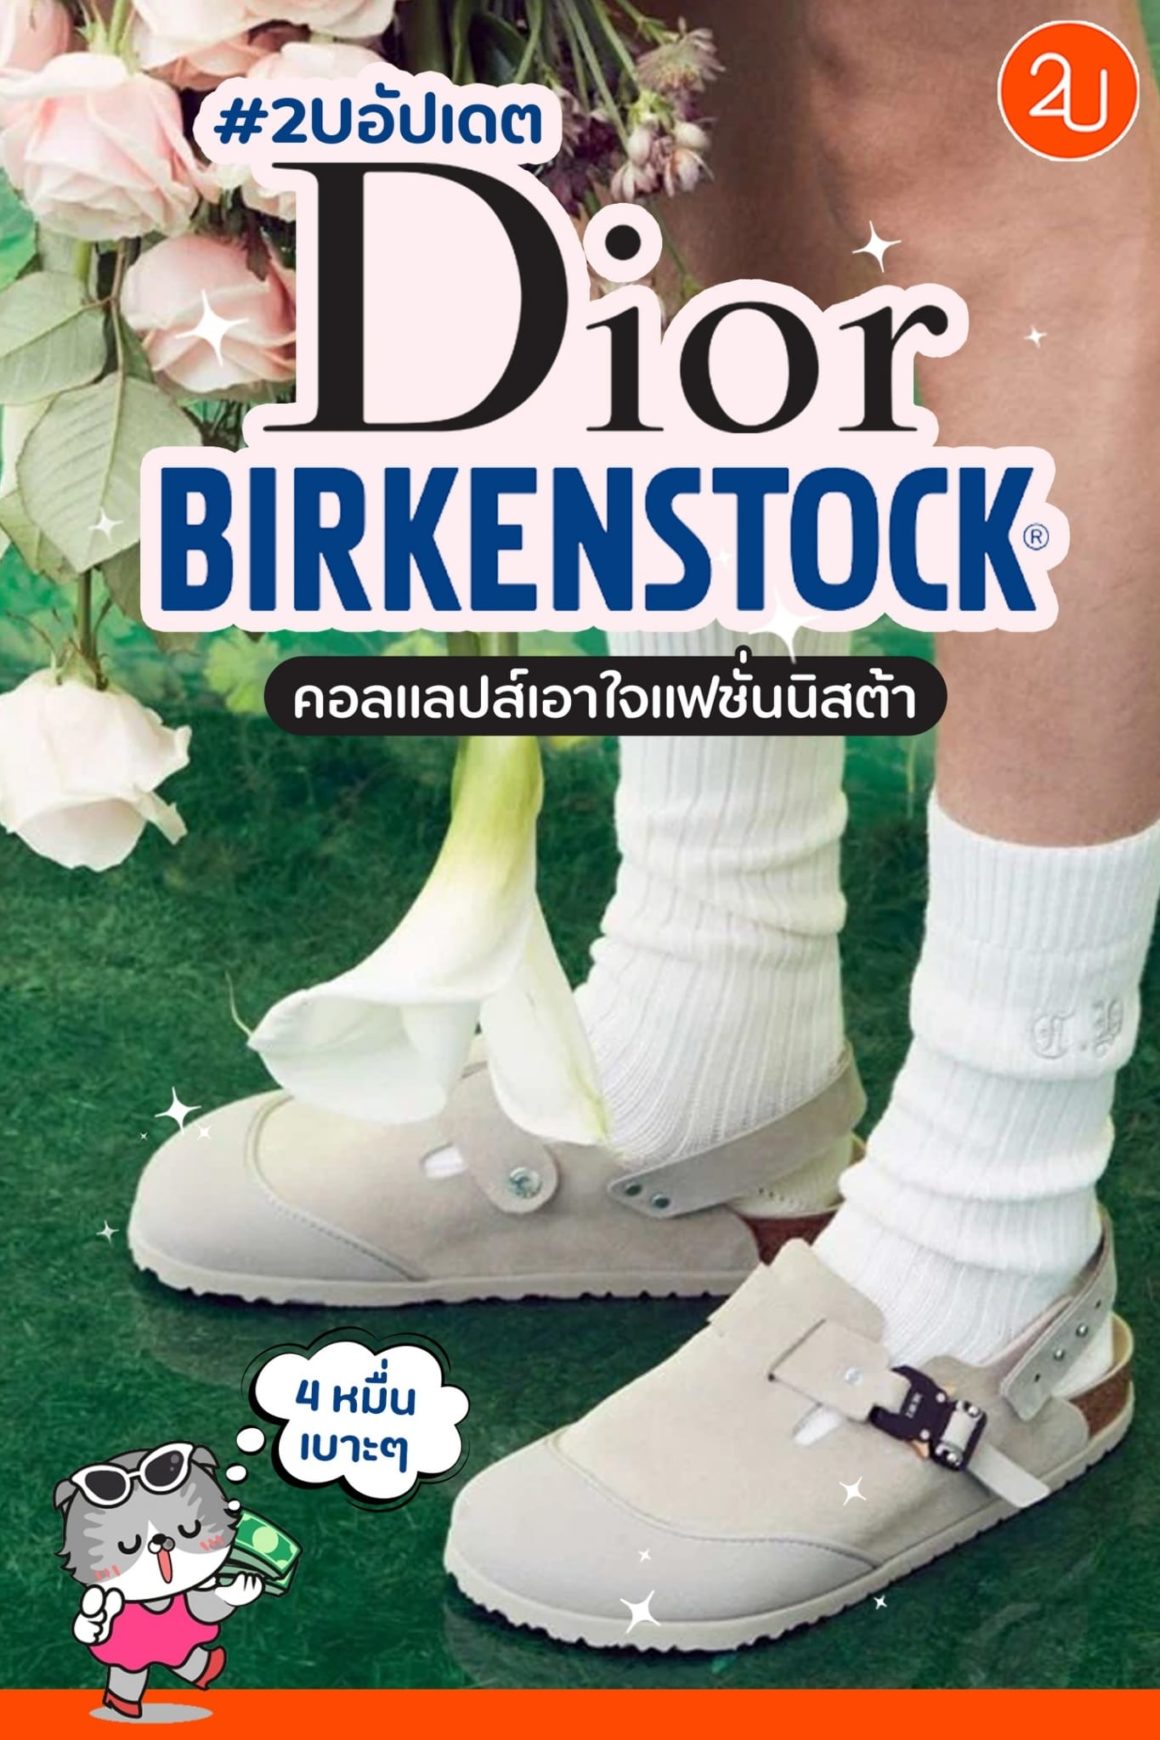 ใหม่! Dior by Birkenstock คอลแลปส์สุดเก๋ เอาใจแฟชั่นนิสต้า